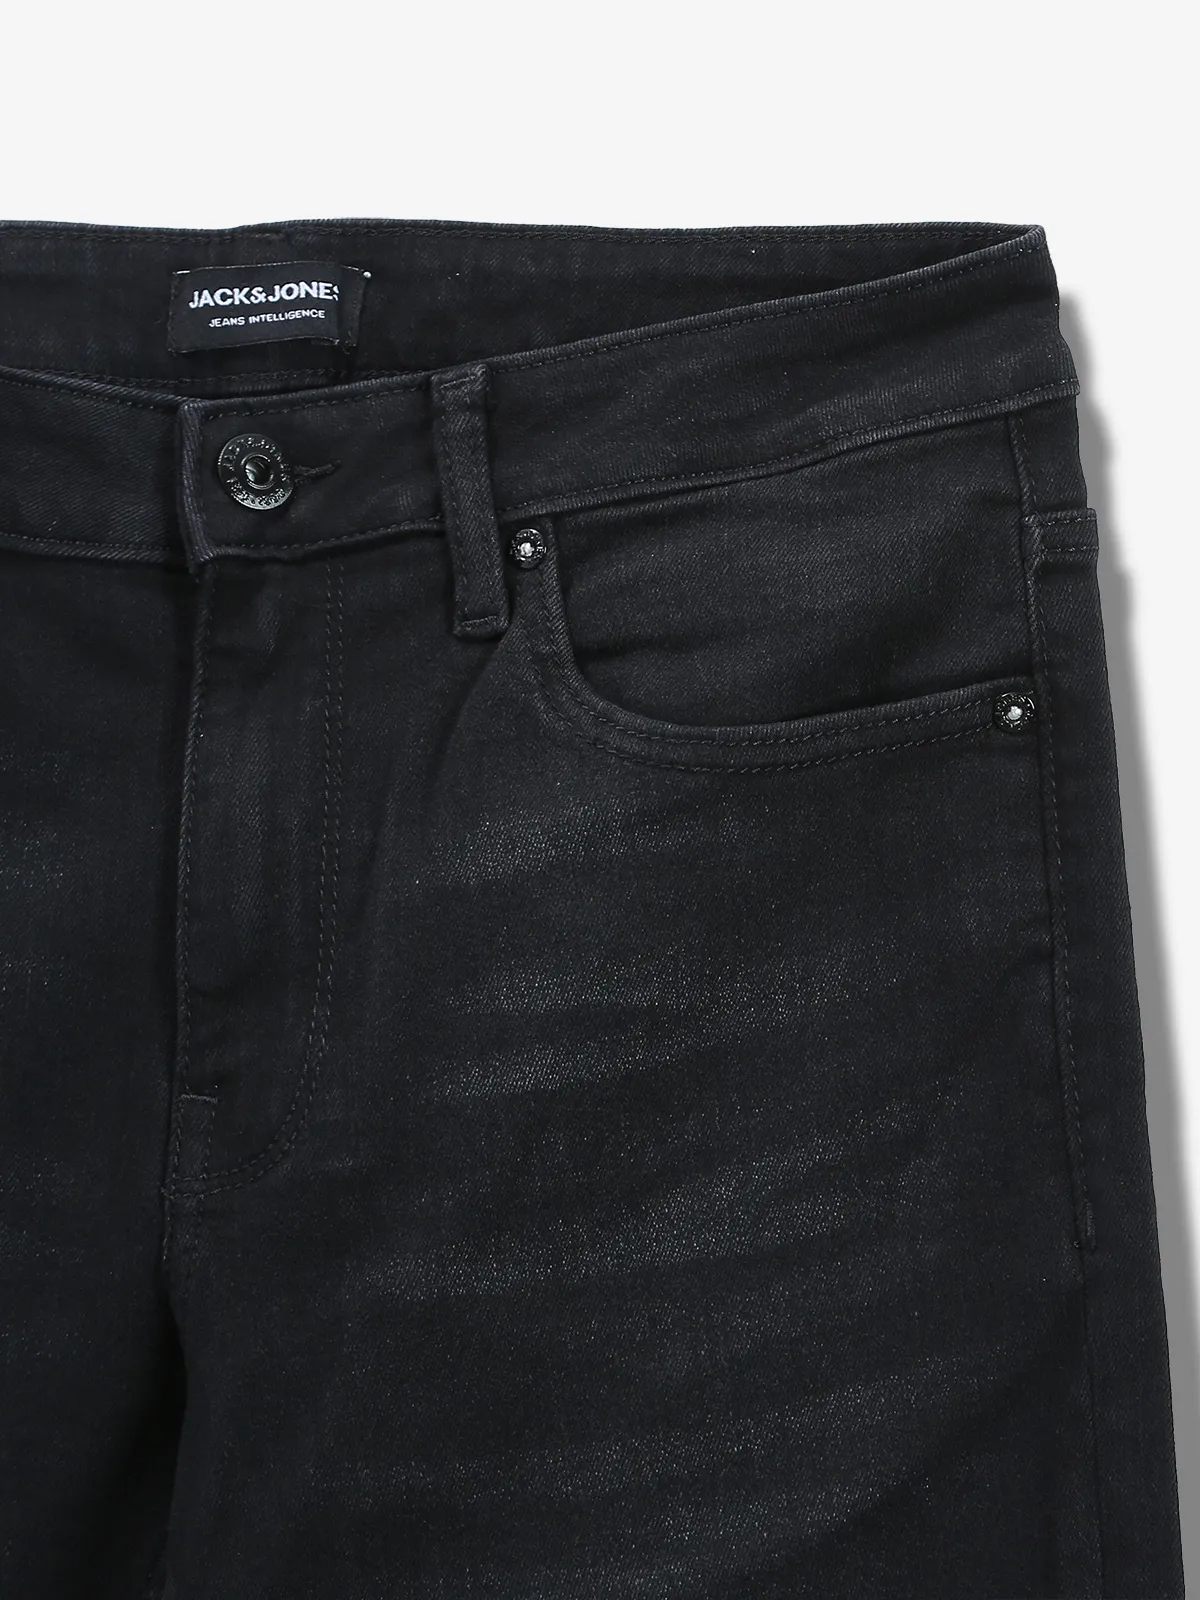 JACK&JONES washed black slim fit jeans